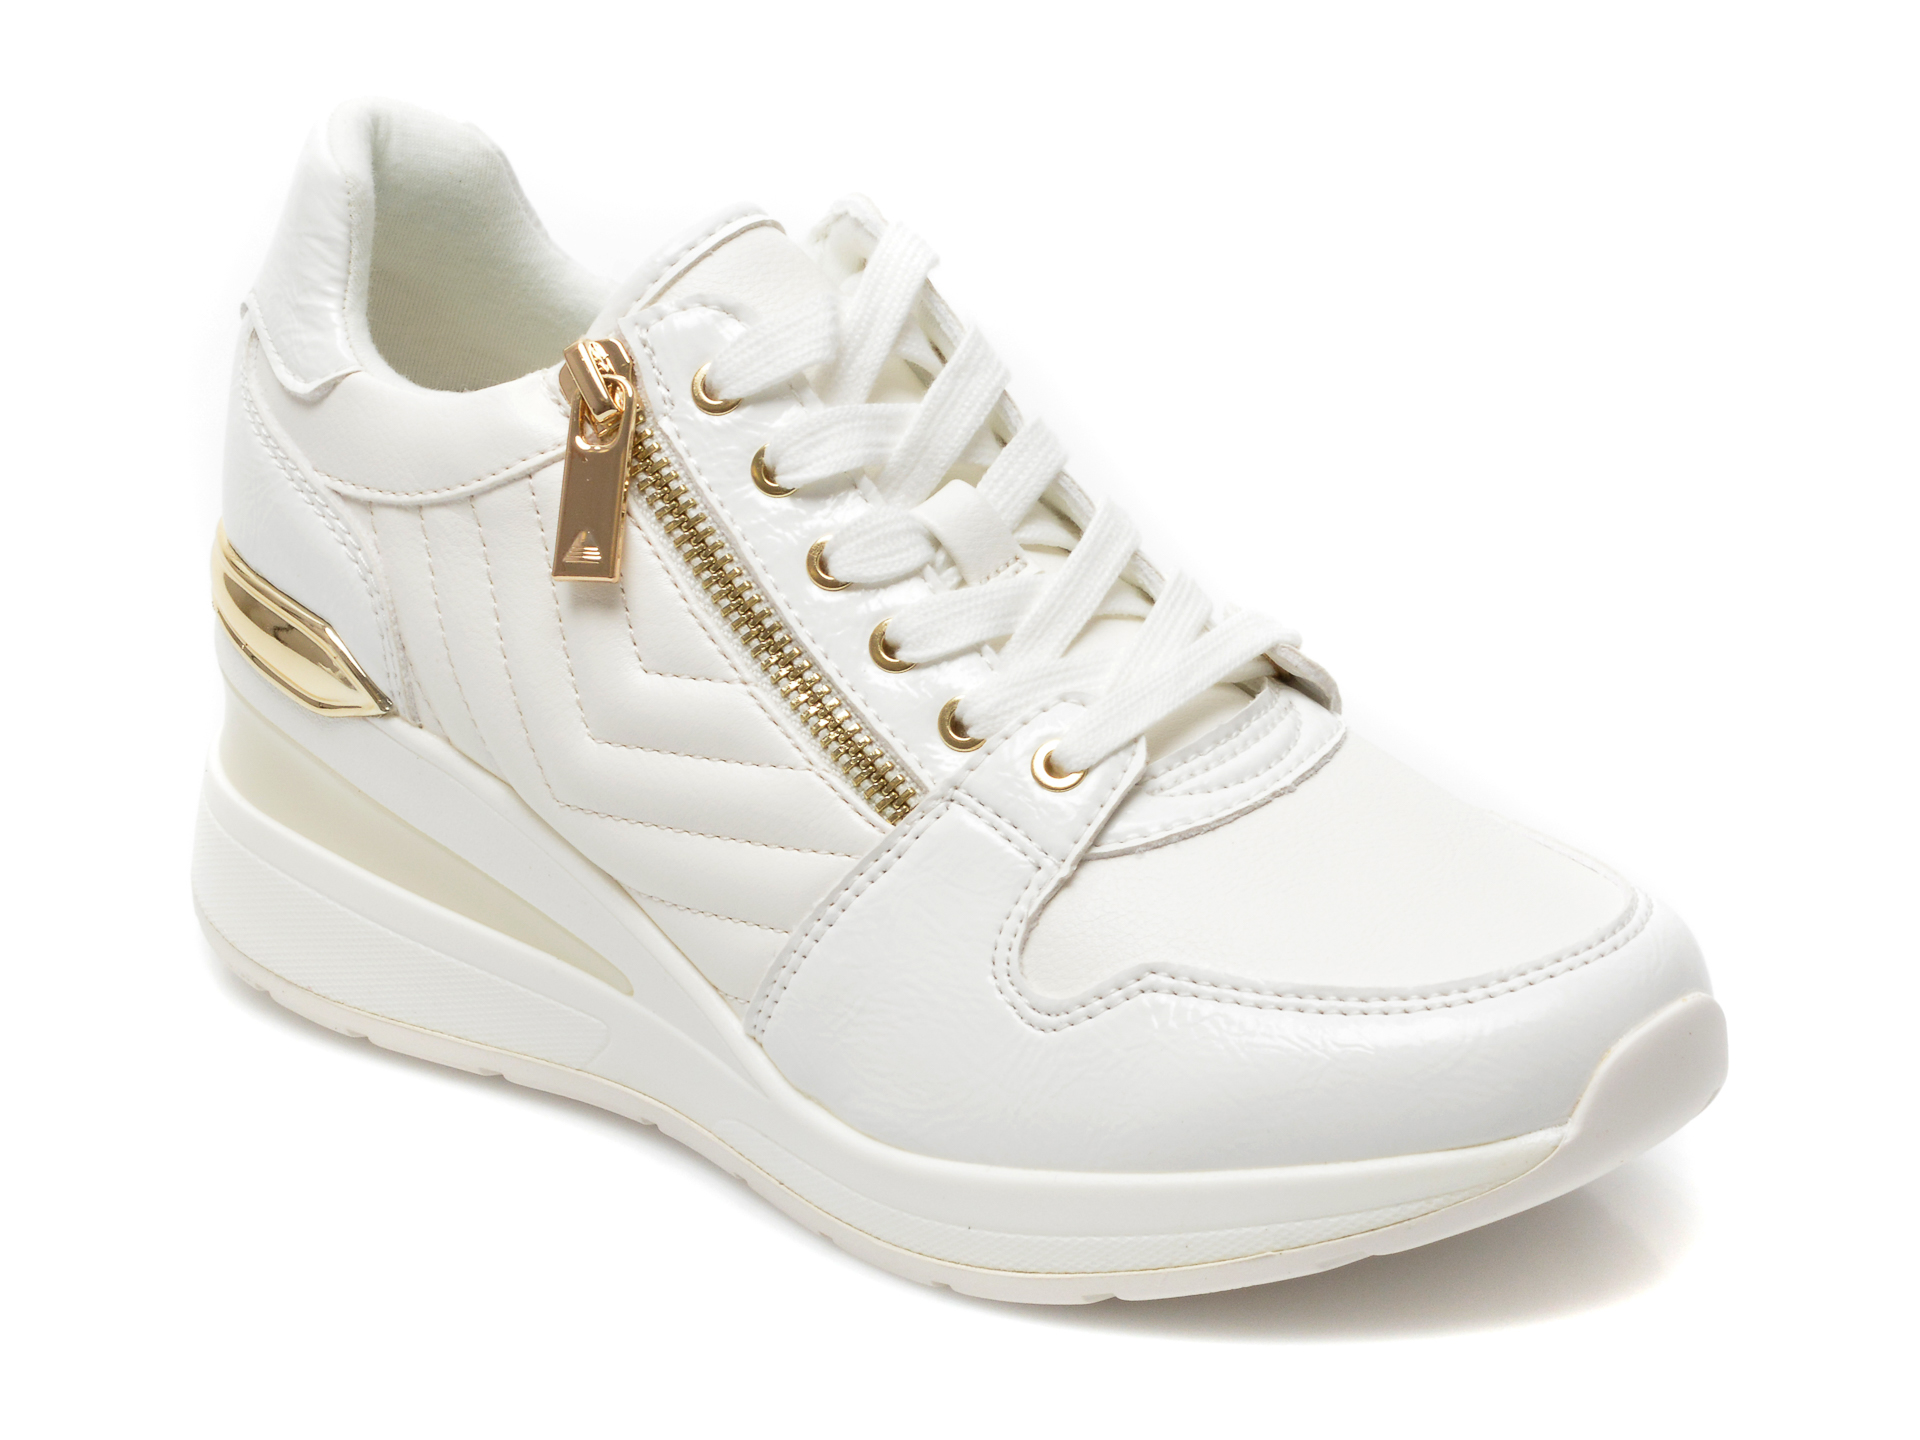 Pantofi sport ALDO albi, ADWIWIA100, din piele ecologica Aldo